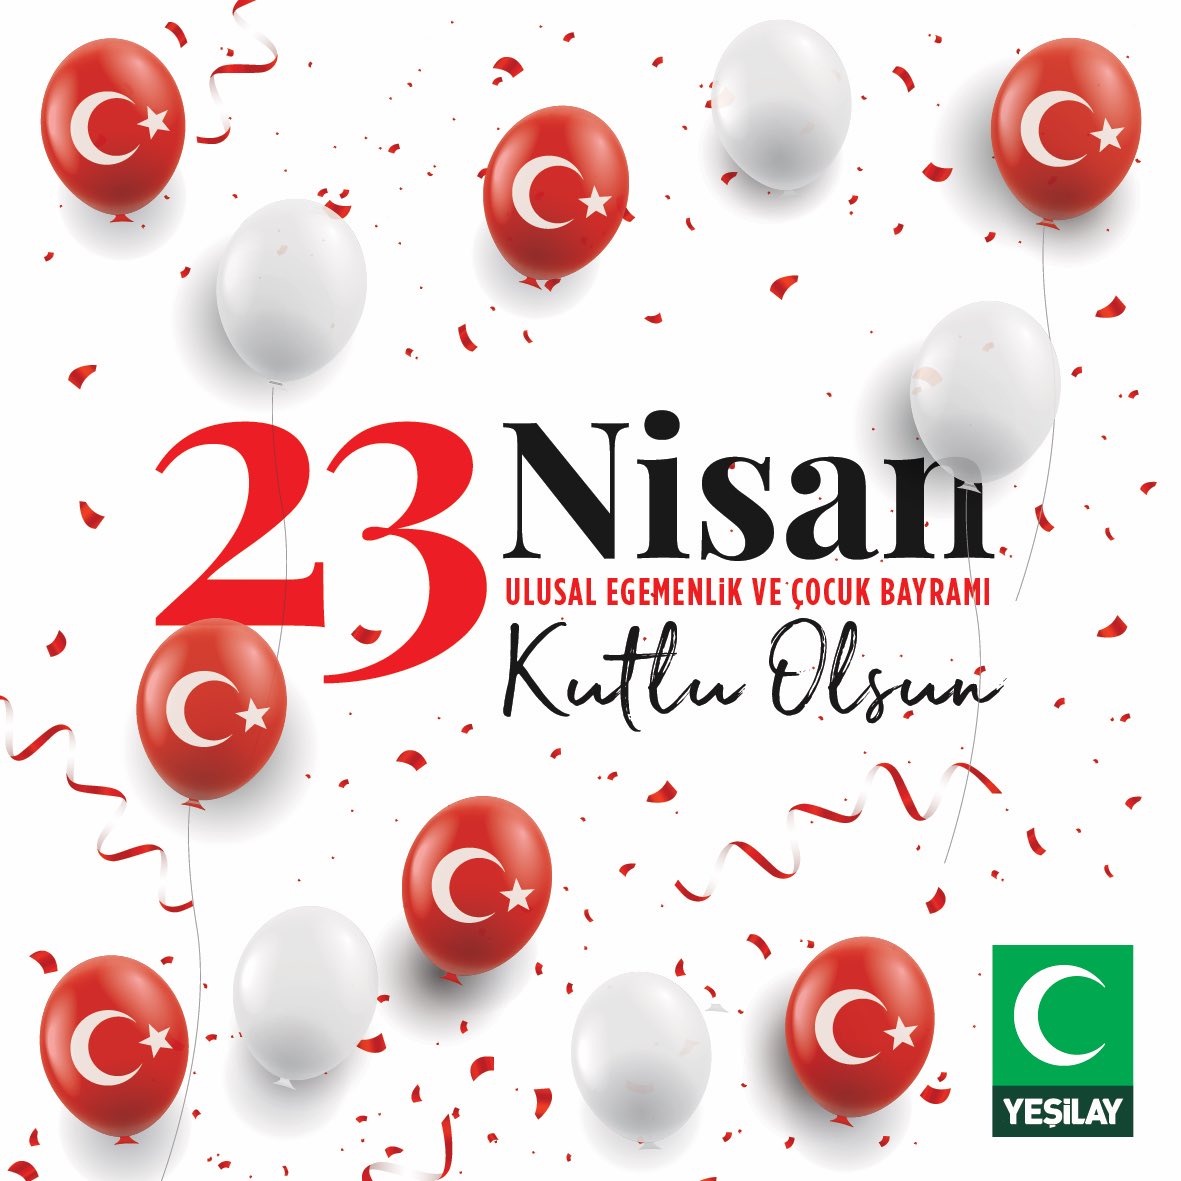 Egemenliğimizin en parlak temsili olan Türkiye Büyük Millet Meclisi’nin açılışı vesilesiyle Ulu Önder Gazi Mustafa Kemal Atatürk’ün çocuklara armağan ettiği 23 Nisan Ulusal Egemenlik ve Çocuk Bayramı kutlu olsun.

#23NisanUlusalEgemenlikveÇocukBayramı 
#Yeşilay #23Nisan…